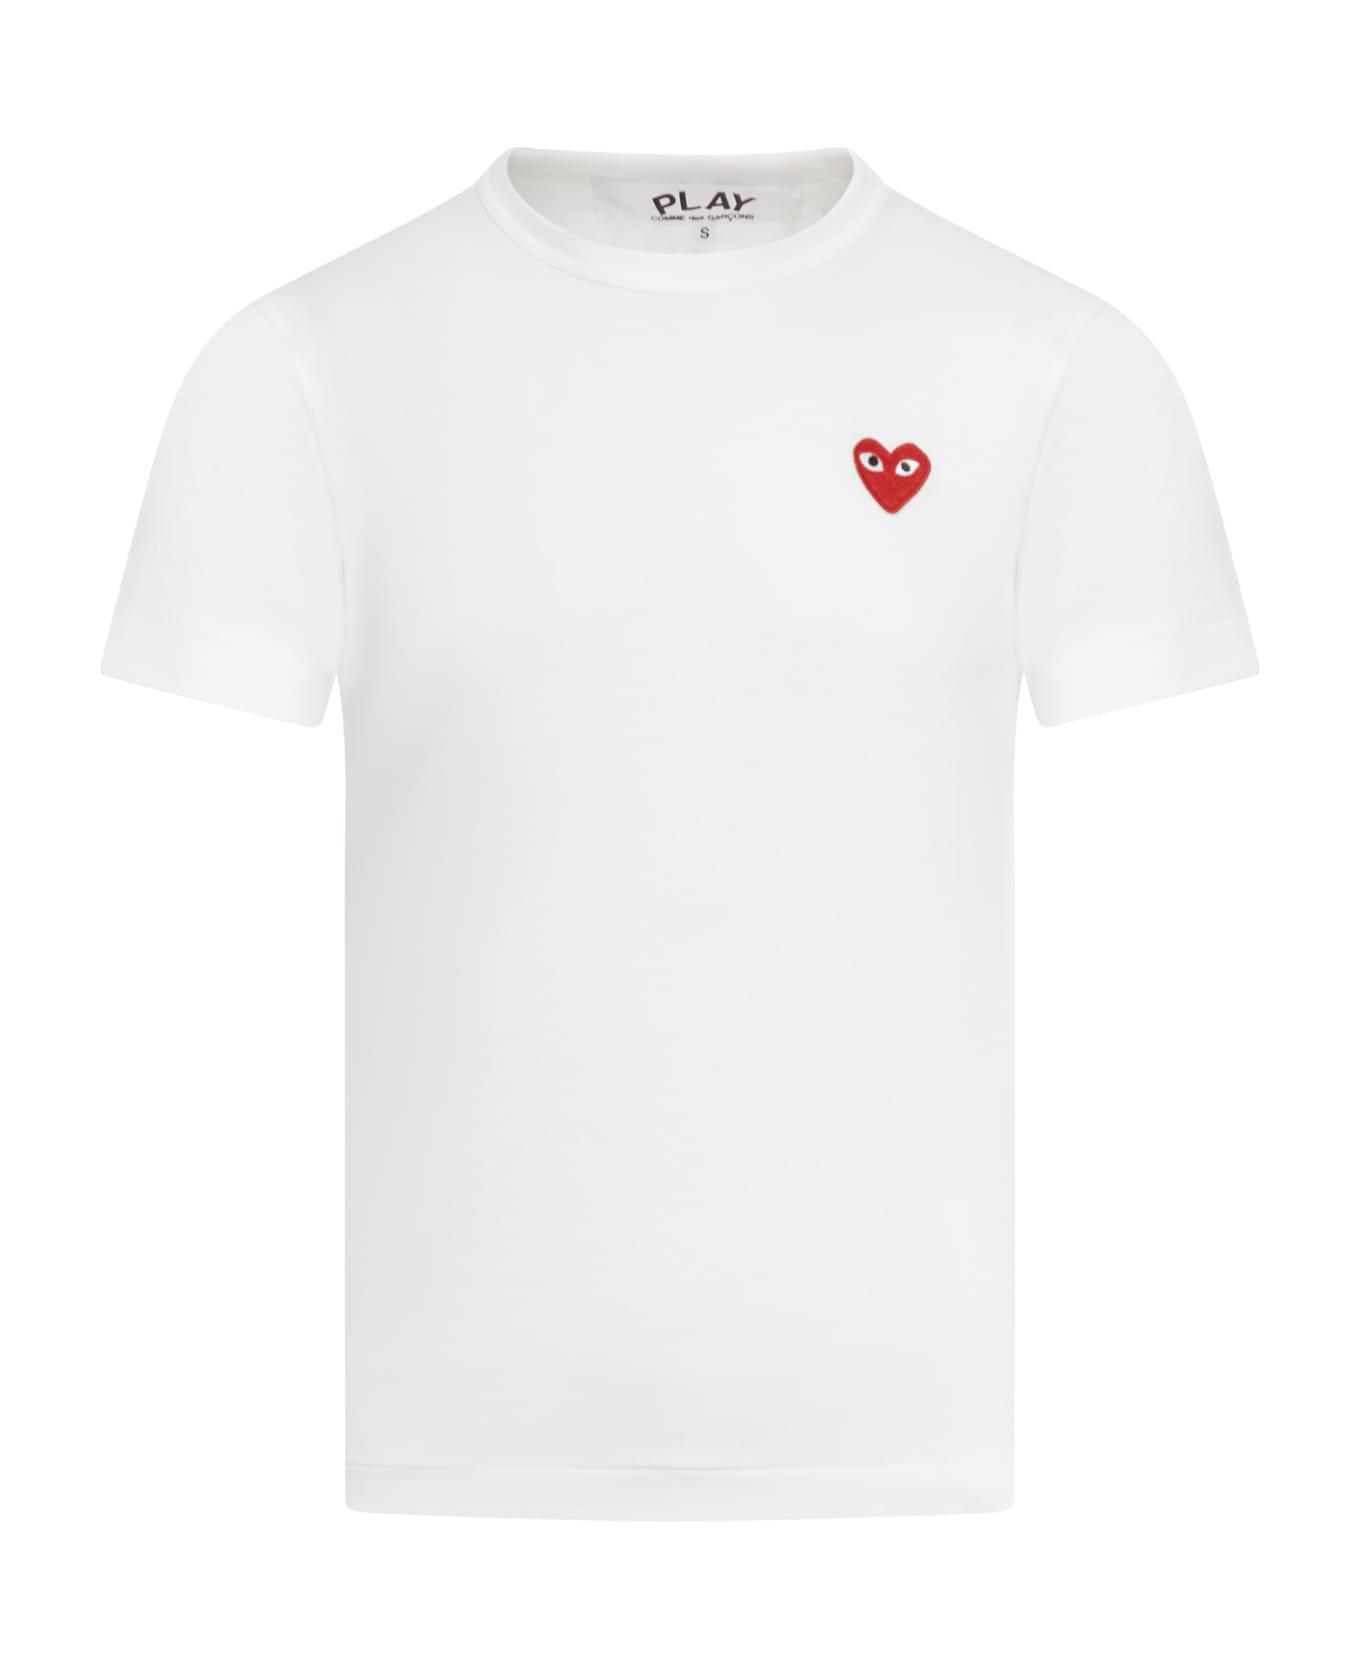 Comme des Garçons Play T-shirt Red Heart - White